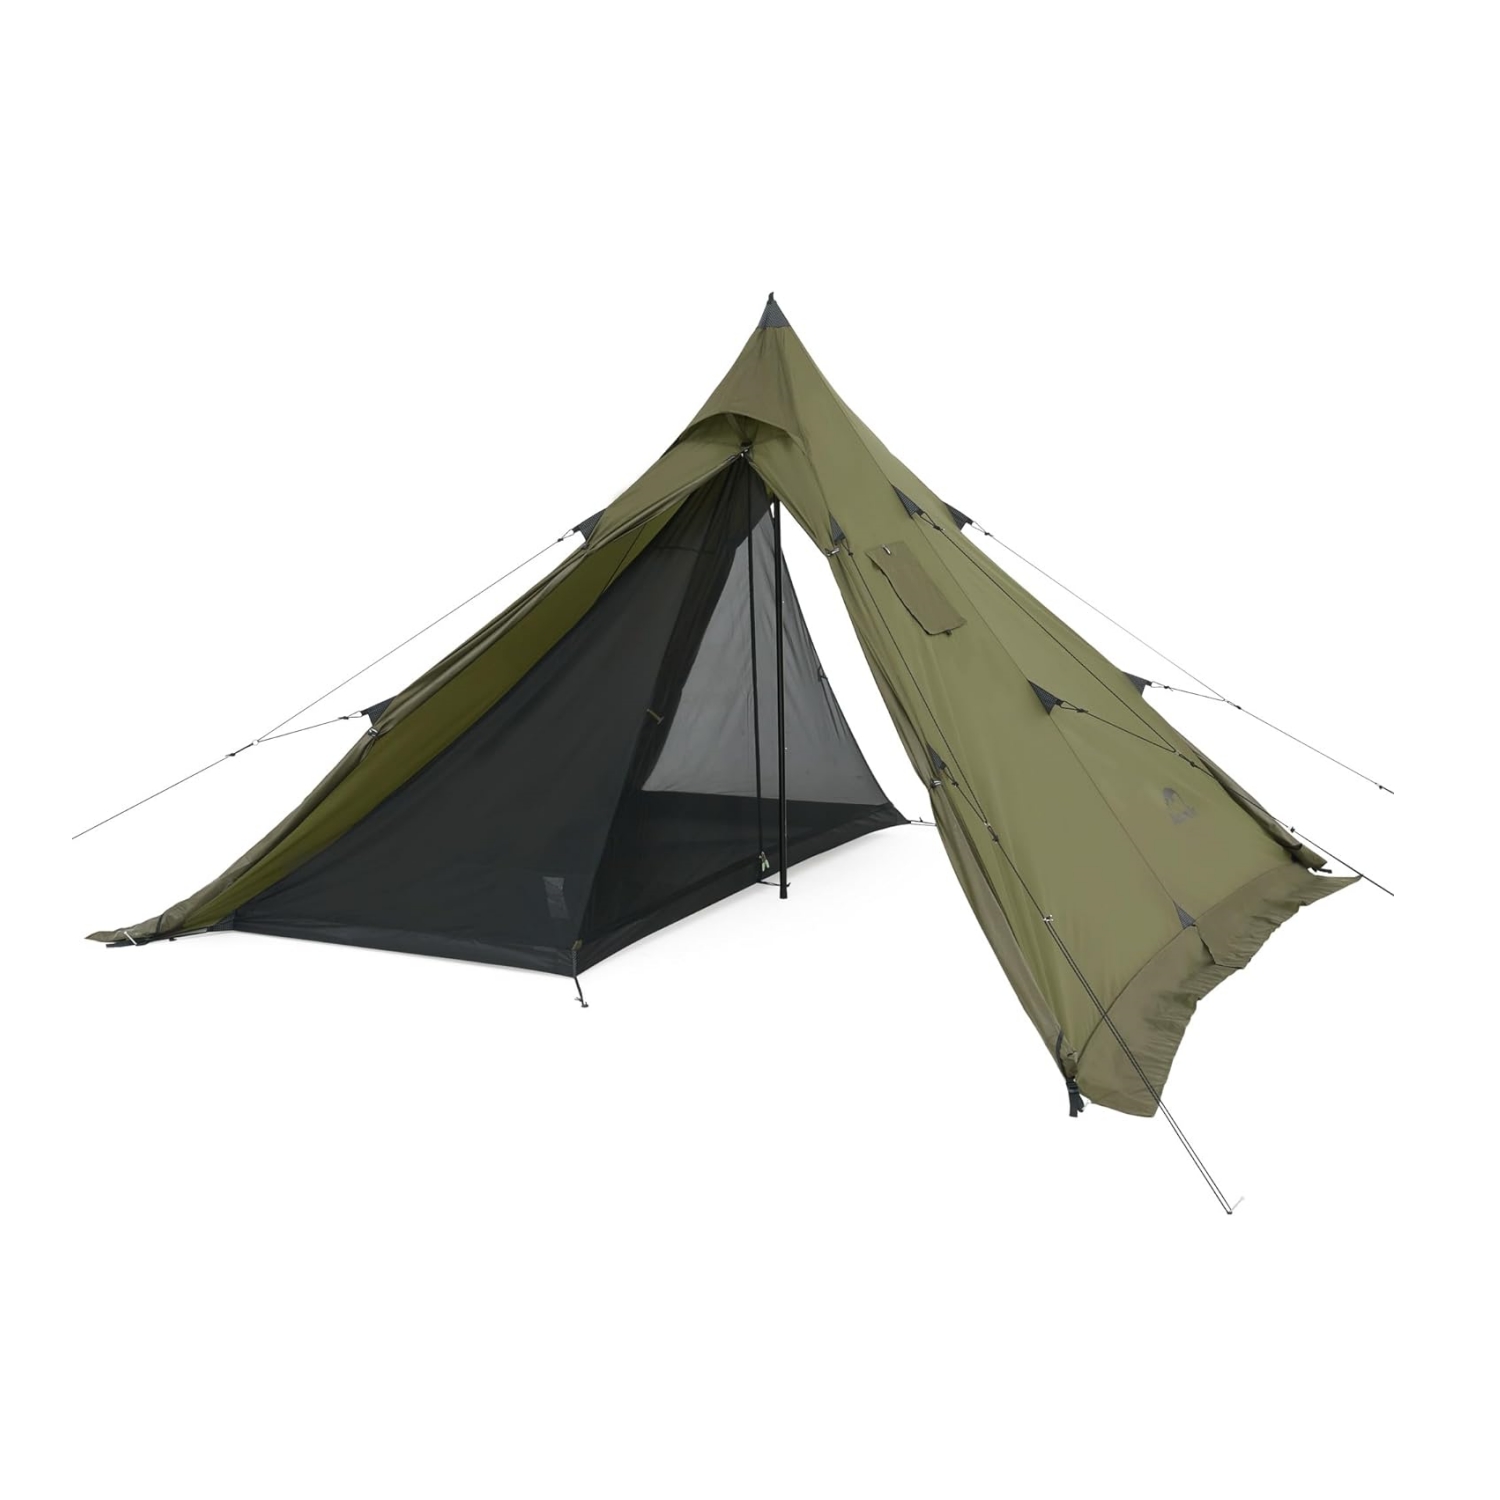 【販売】ATEPA テント 2-3人用 キャンプ テント ツーリングテント テント/タープ